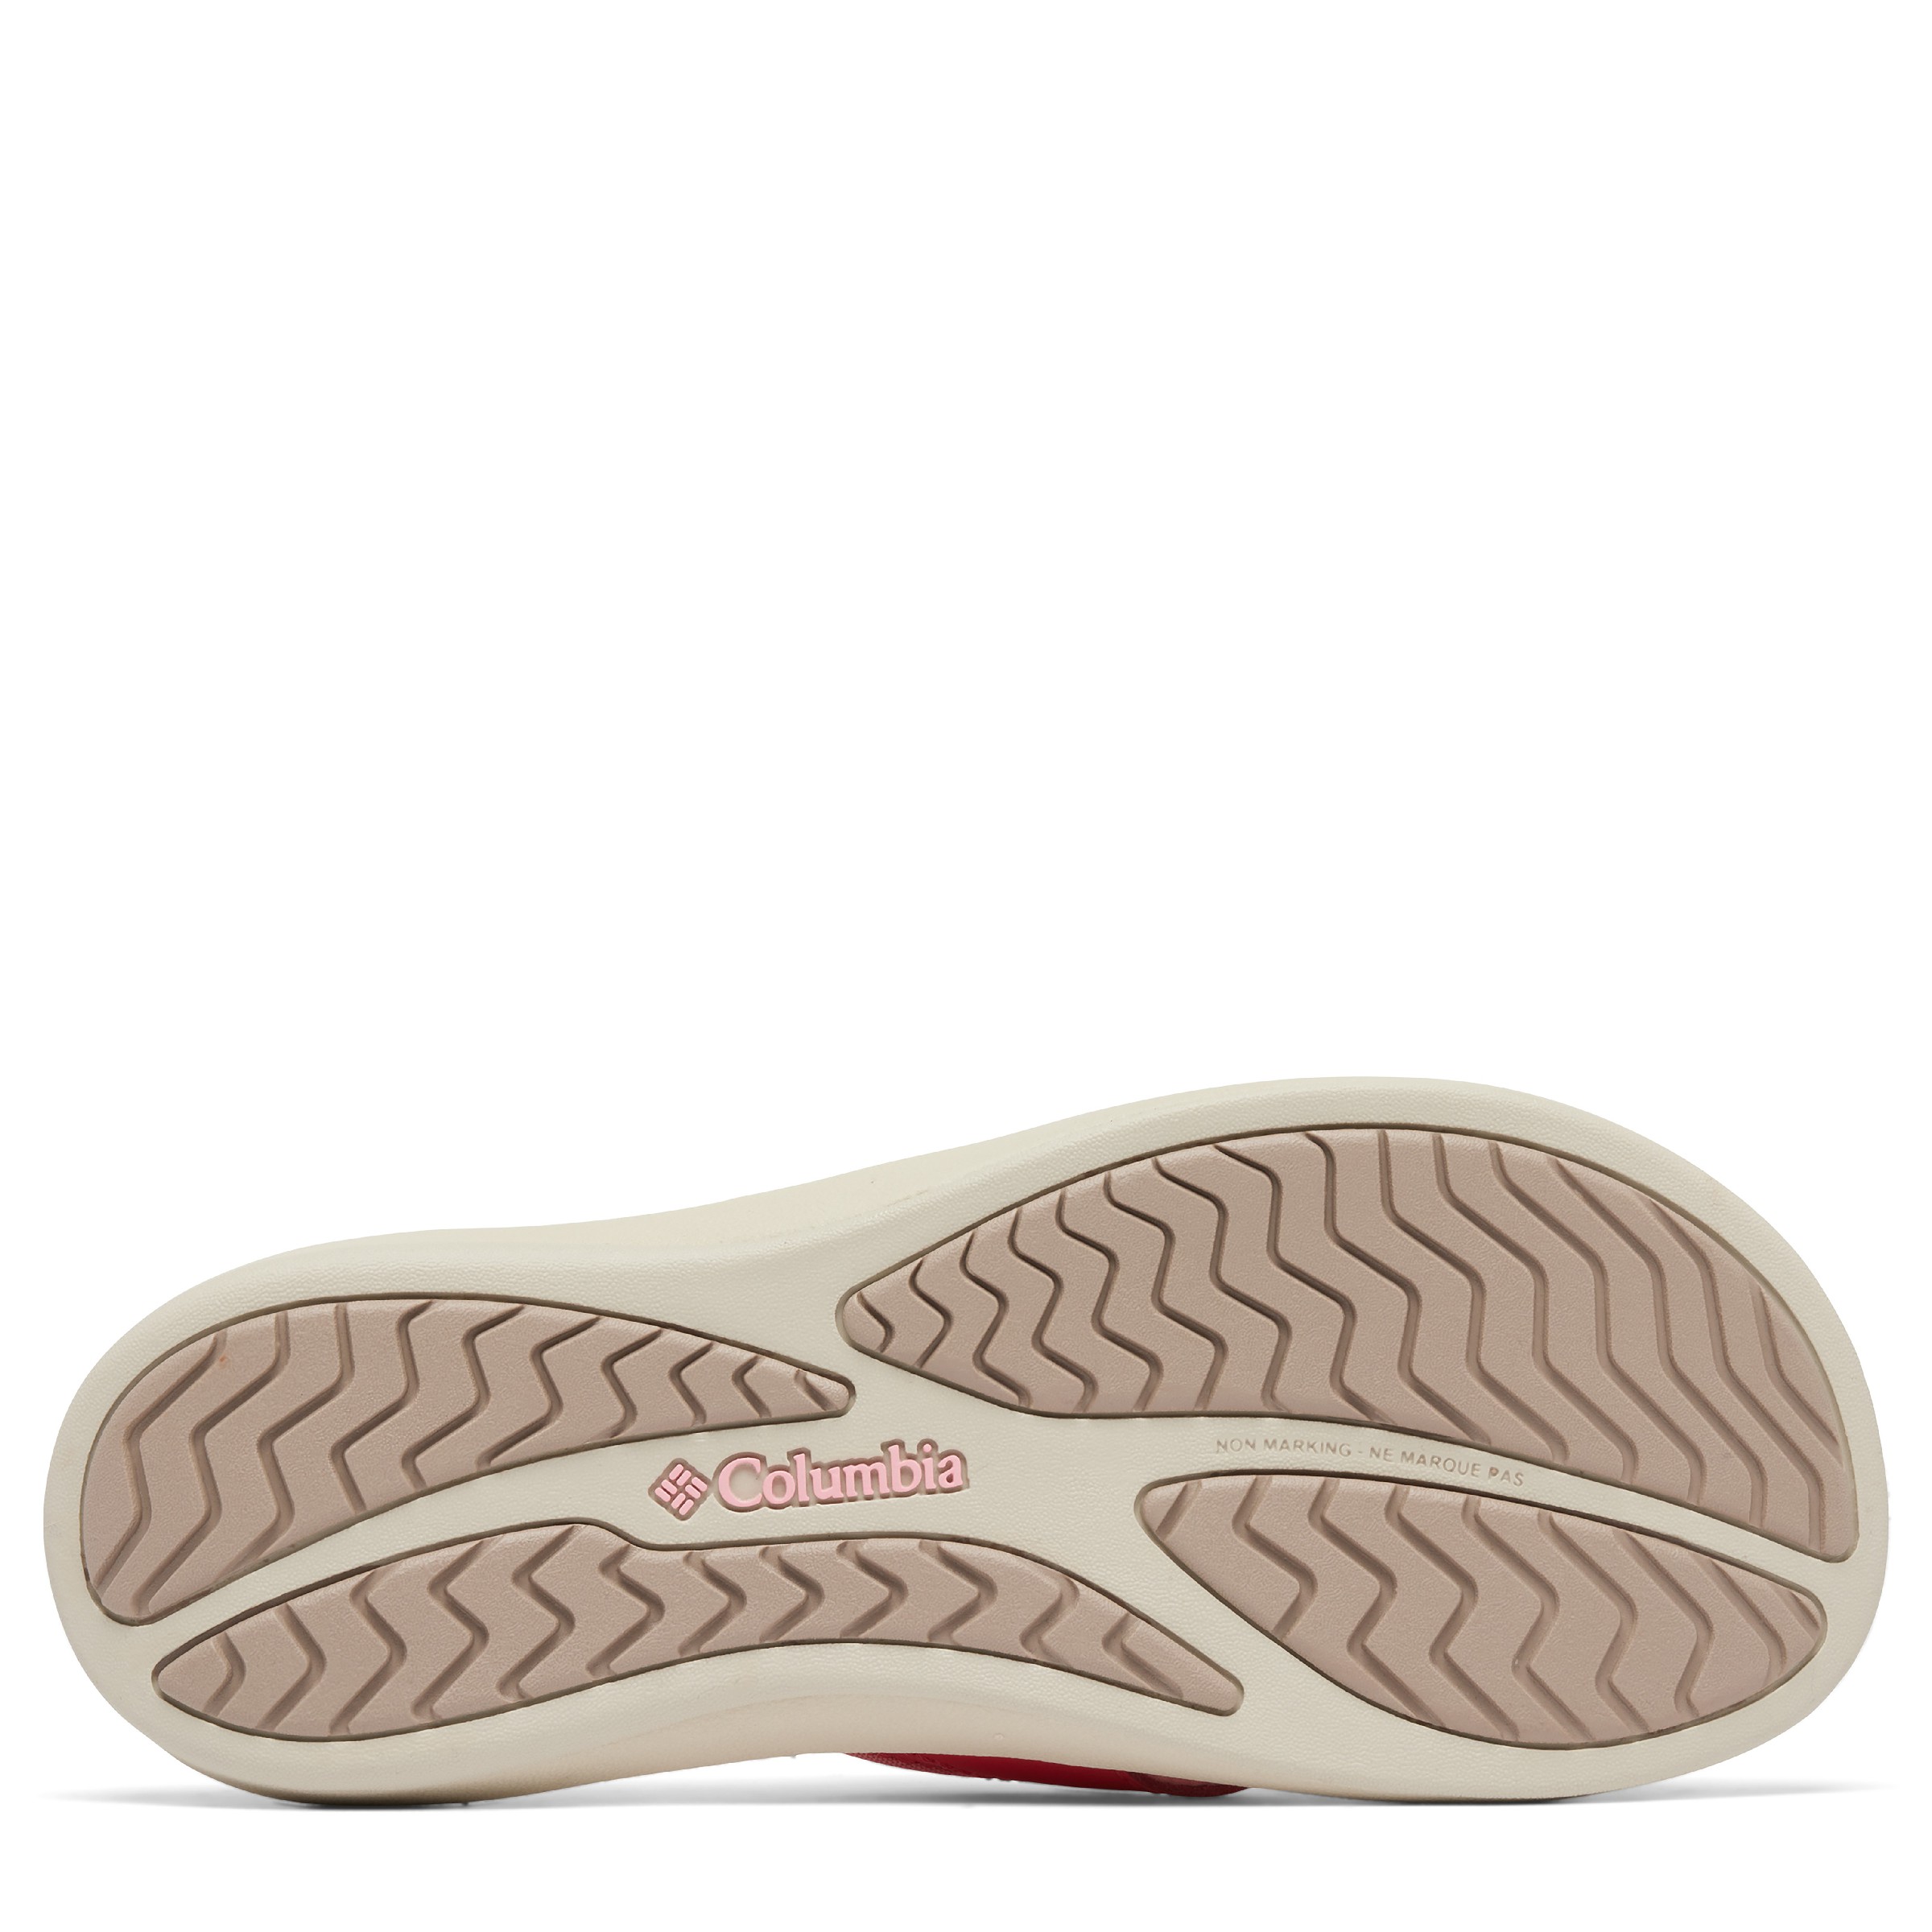 Women's Kea II Flip Flop Sandal